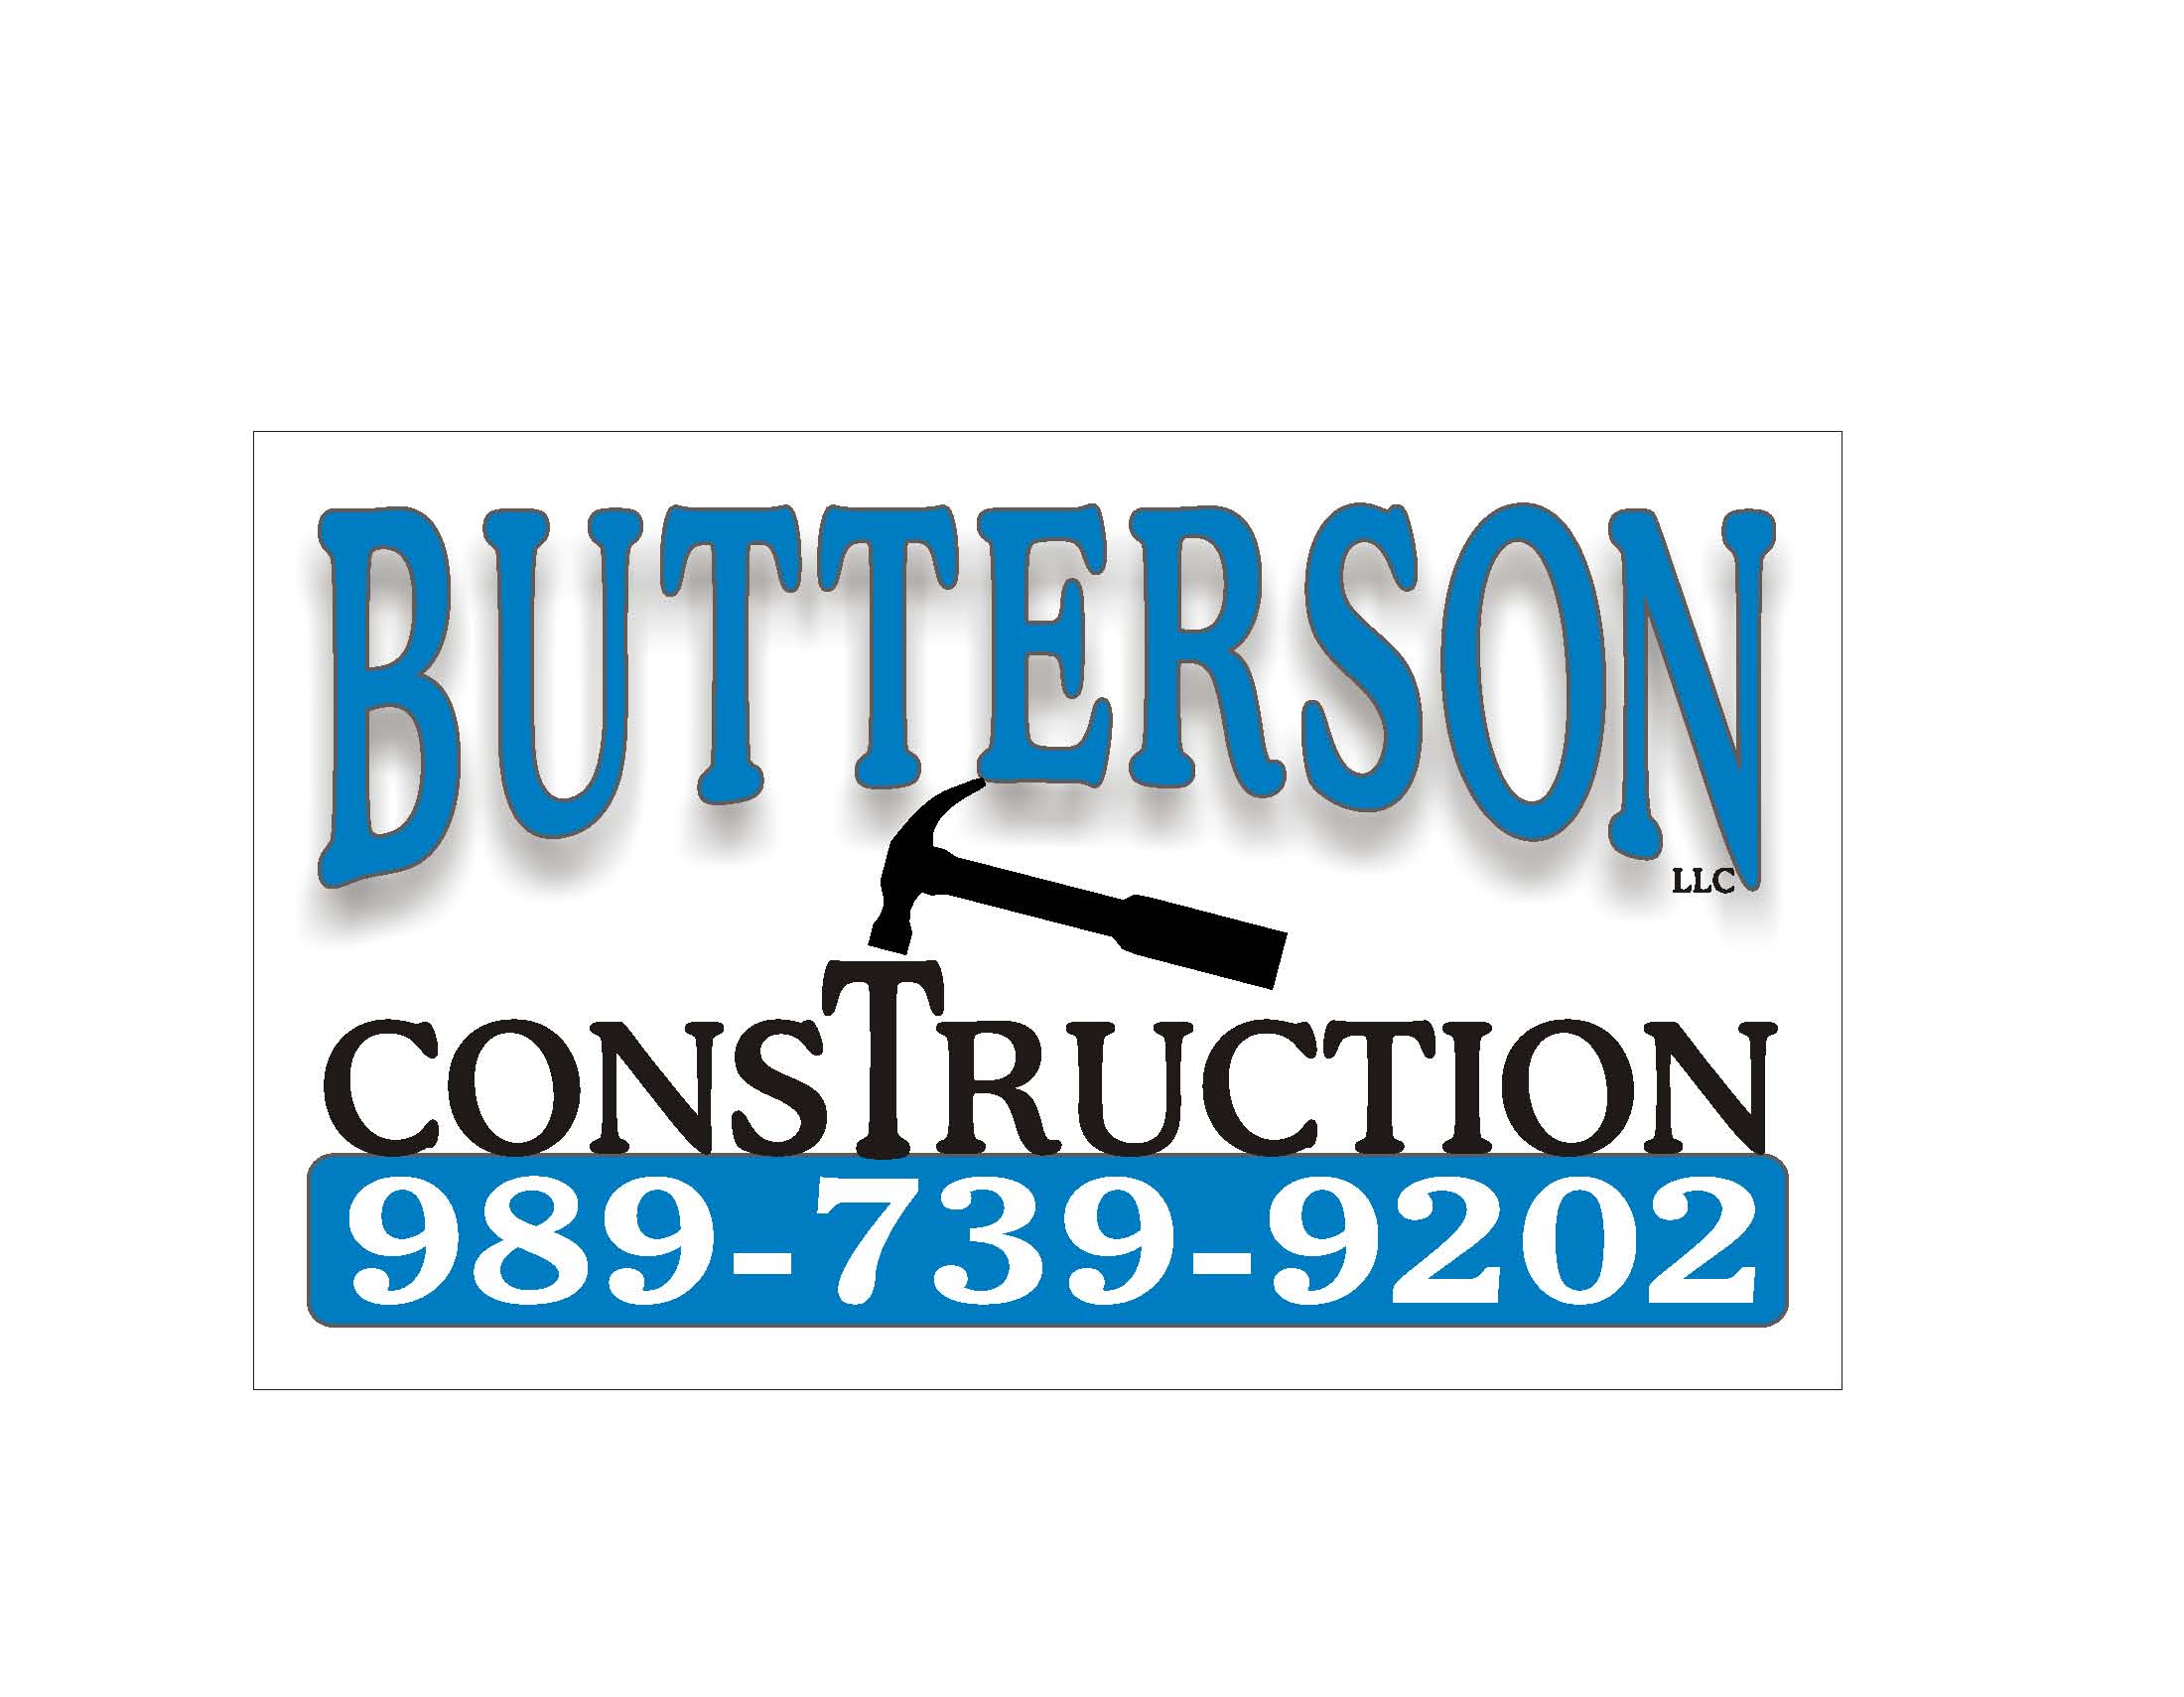 Butterson Construction, LLC Logo